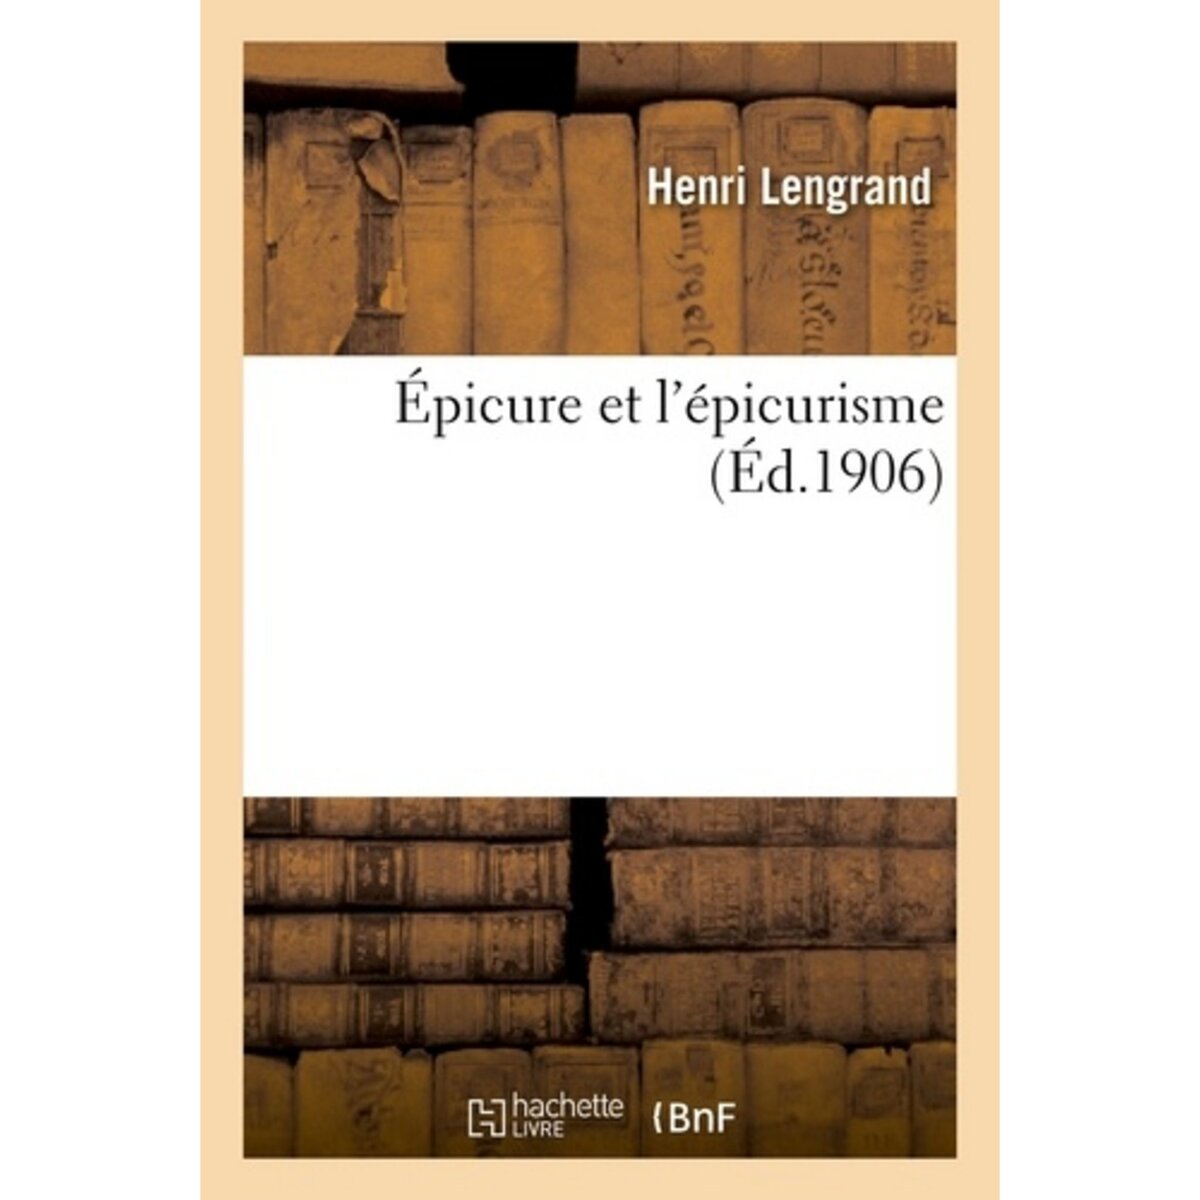  ÉPICURE ET L'ÉPICURISME, Lengrand Henri